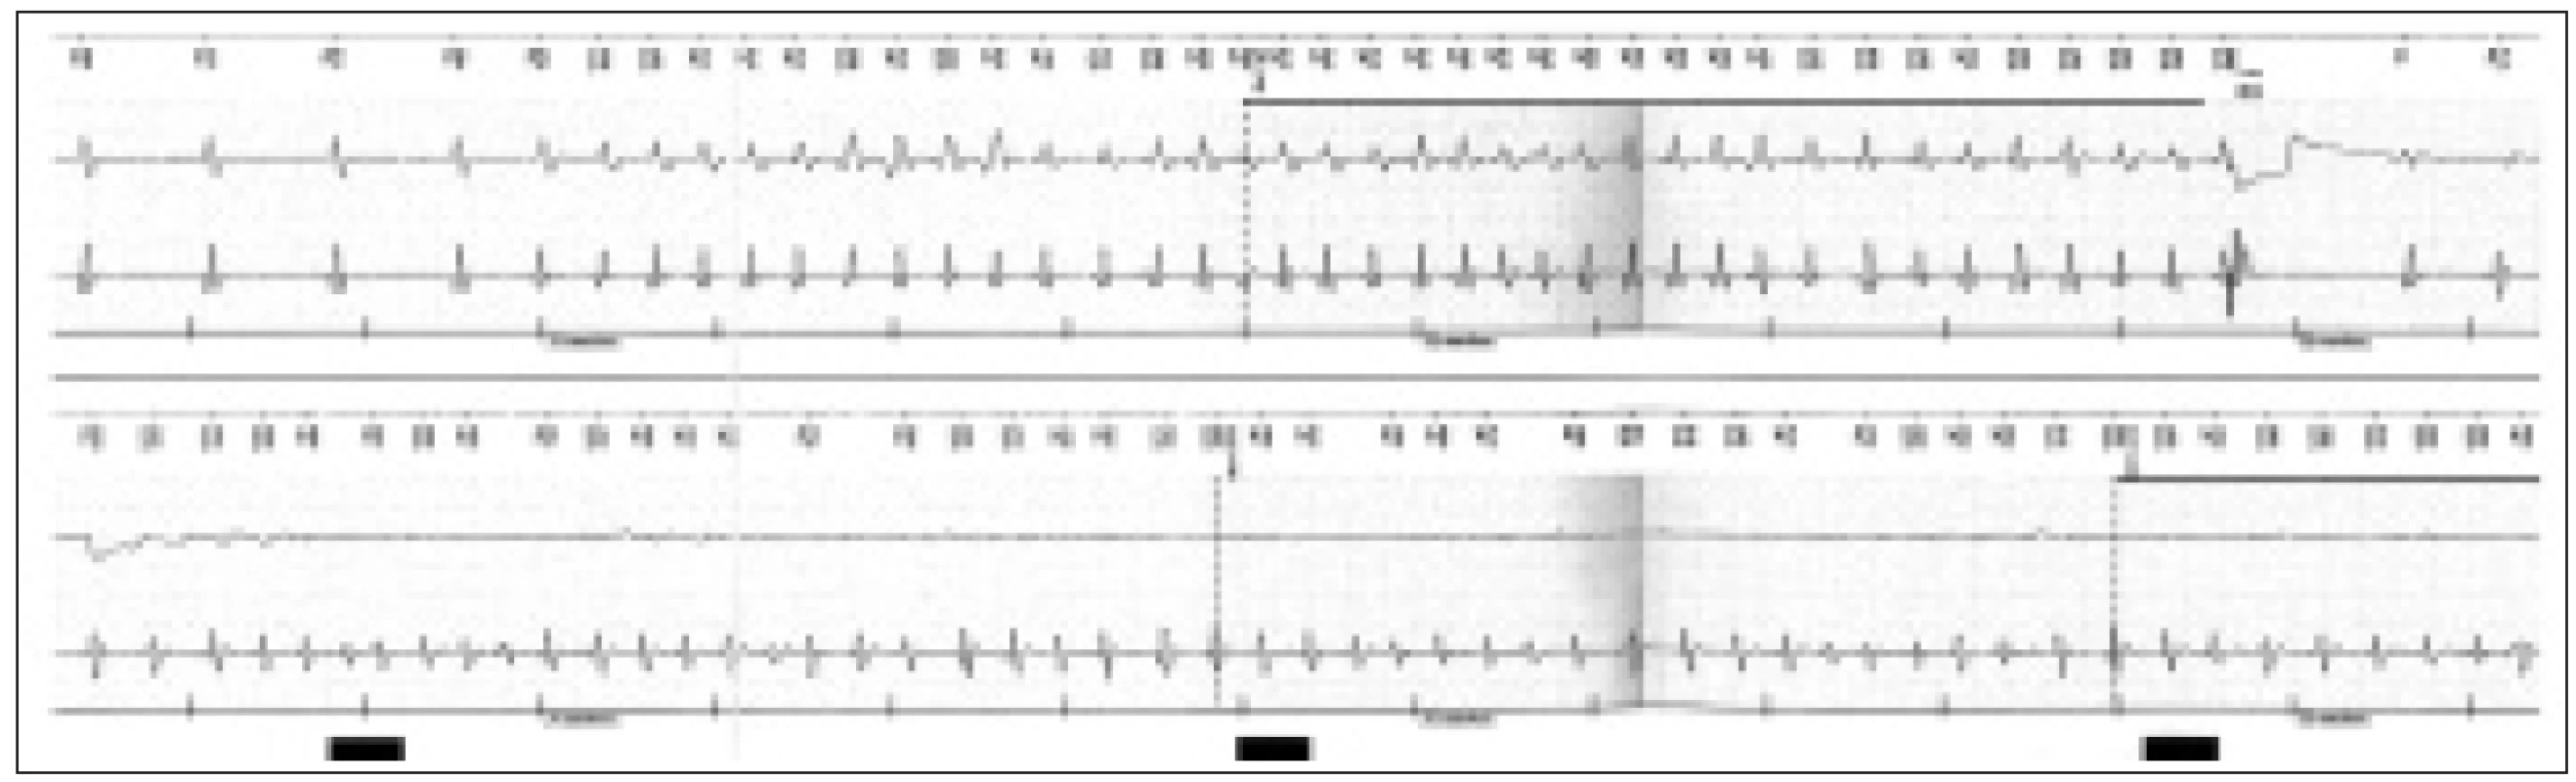 Výpis z paměti ICD – v úvodu sinusový rytmus, následující komorová tachyarytmie detekována přístrojem v zóně VF – po nabití přístroje vydán defibrilační výboj s terminací tachykardie.